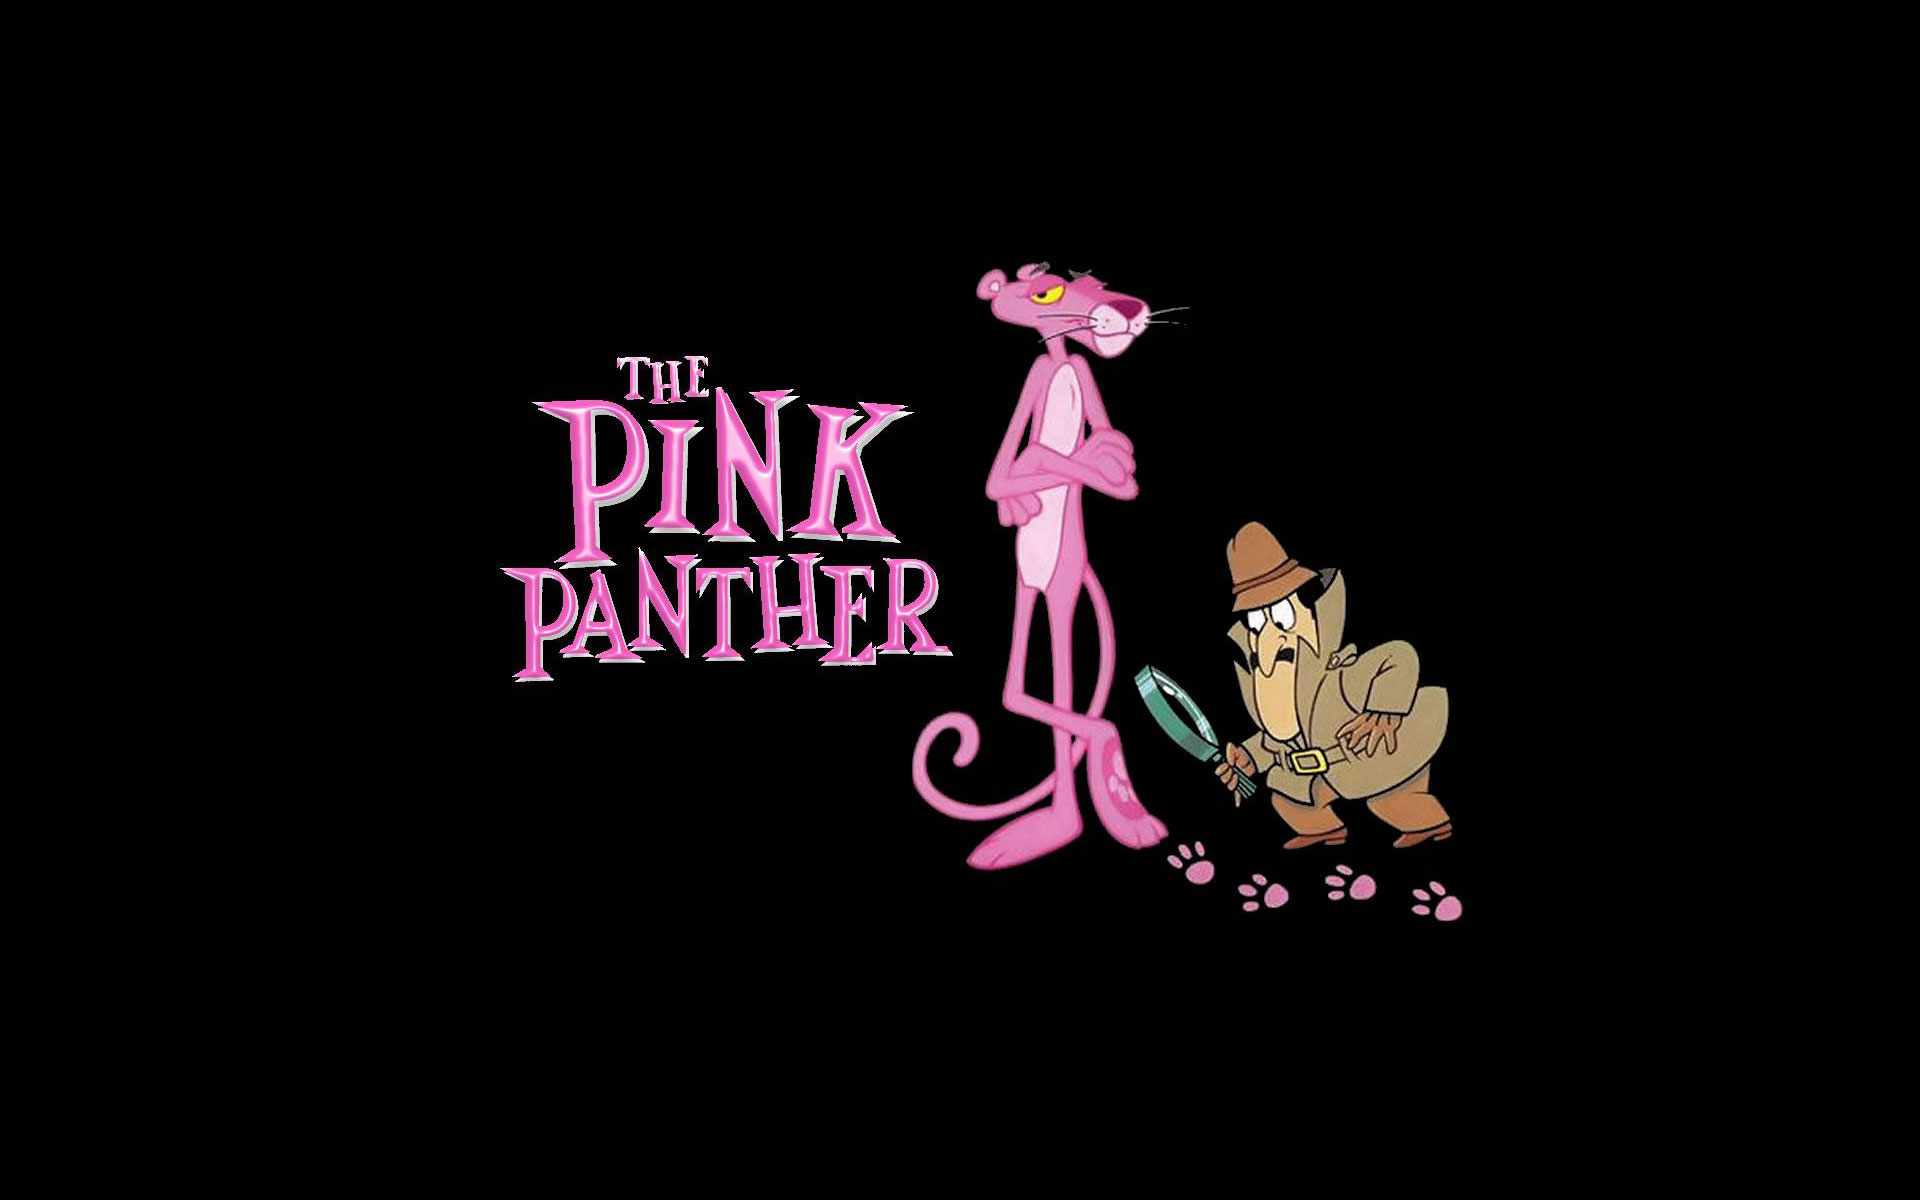 Pink panther text